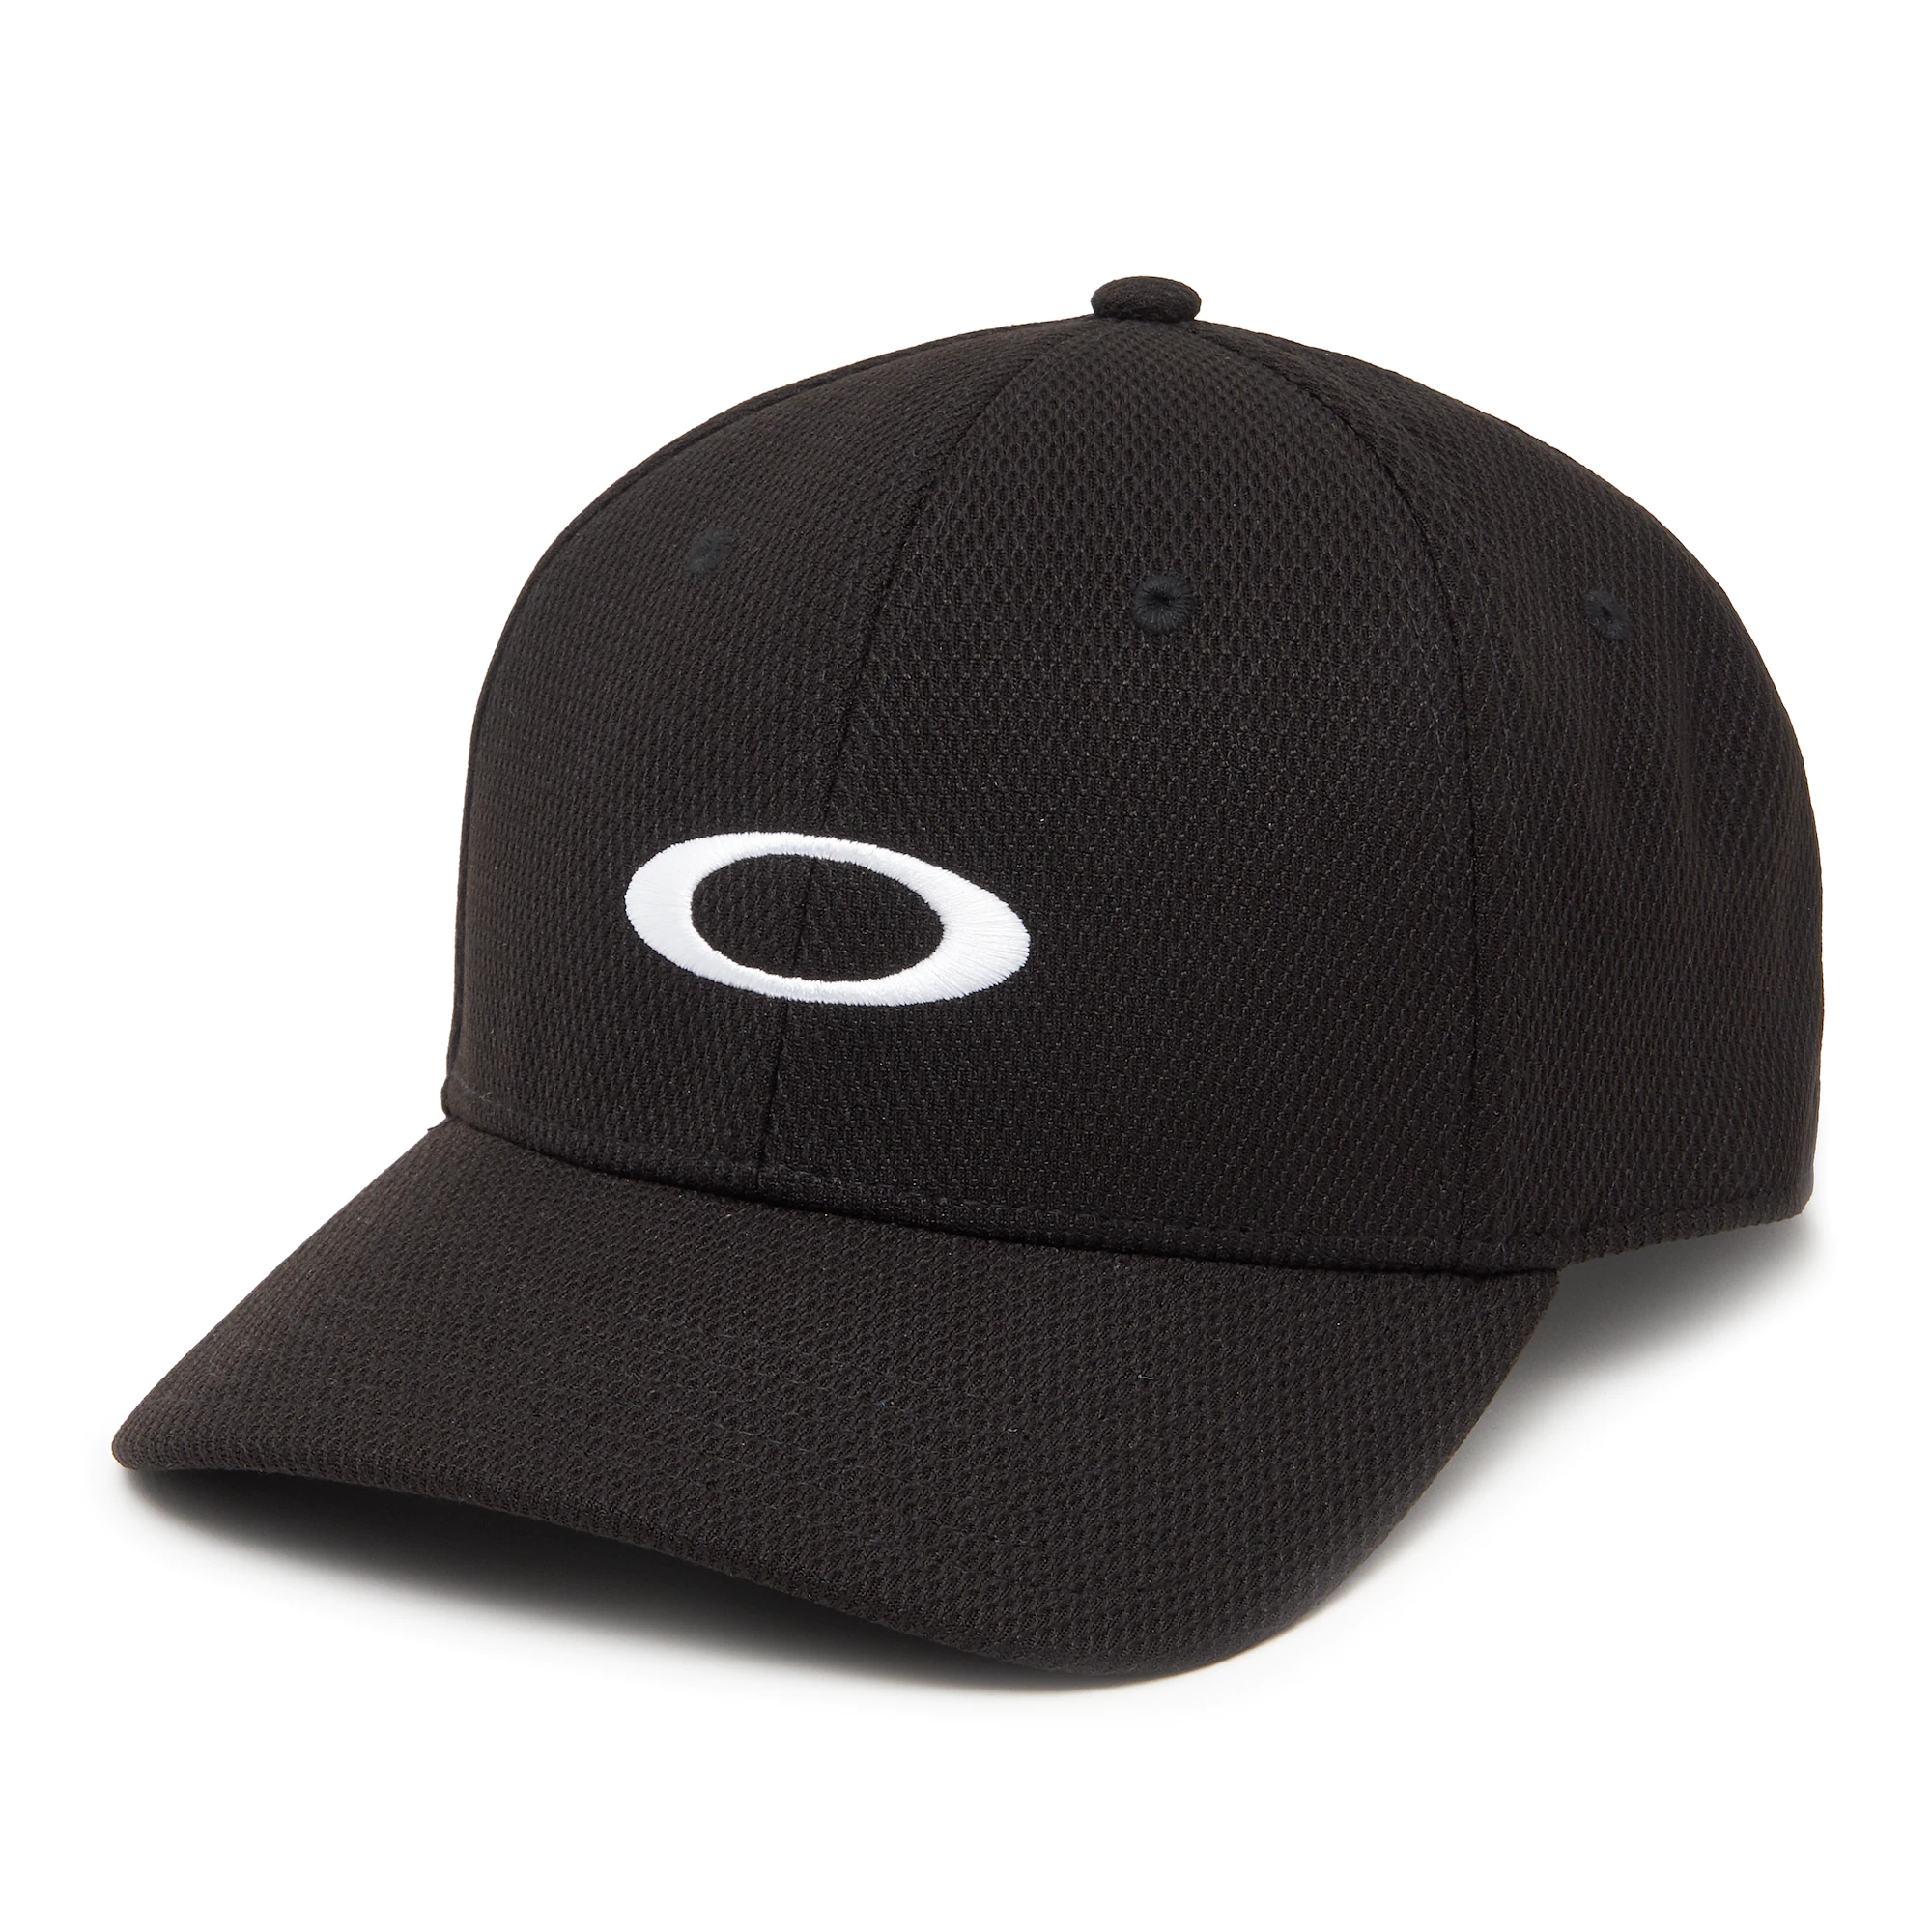 OAKLEY GOLF ELLIPSE HAT online kaufen